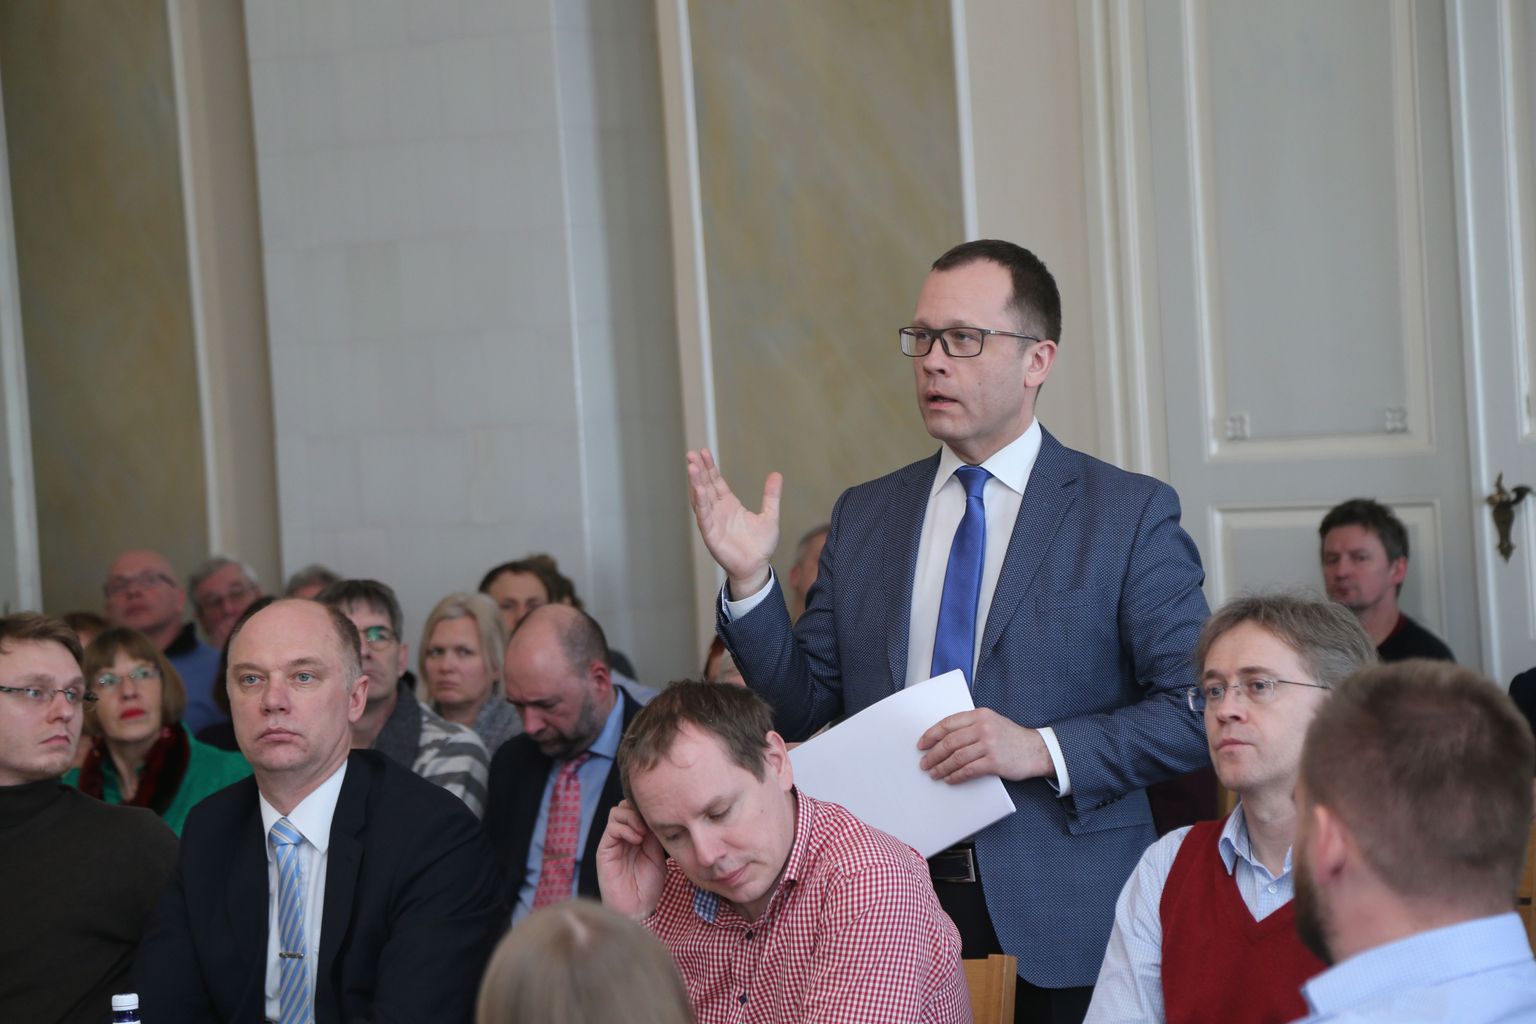 Kavandatava tselluloositehase teemaline arutelu Tartu raekoja saalis. Pildil Tartu linnapea Urmas Klaas.